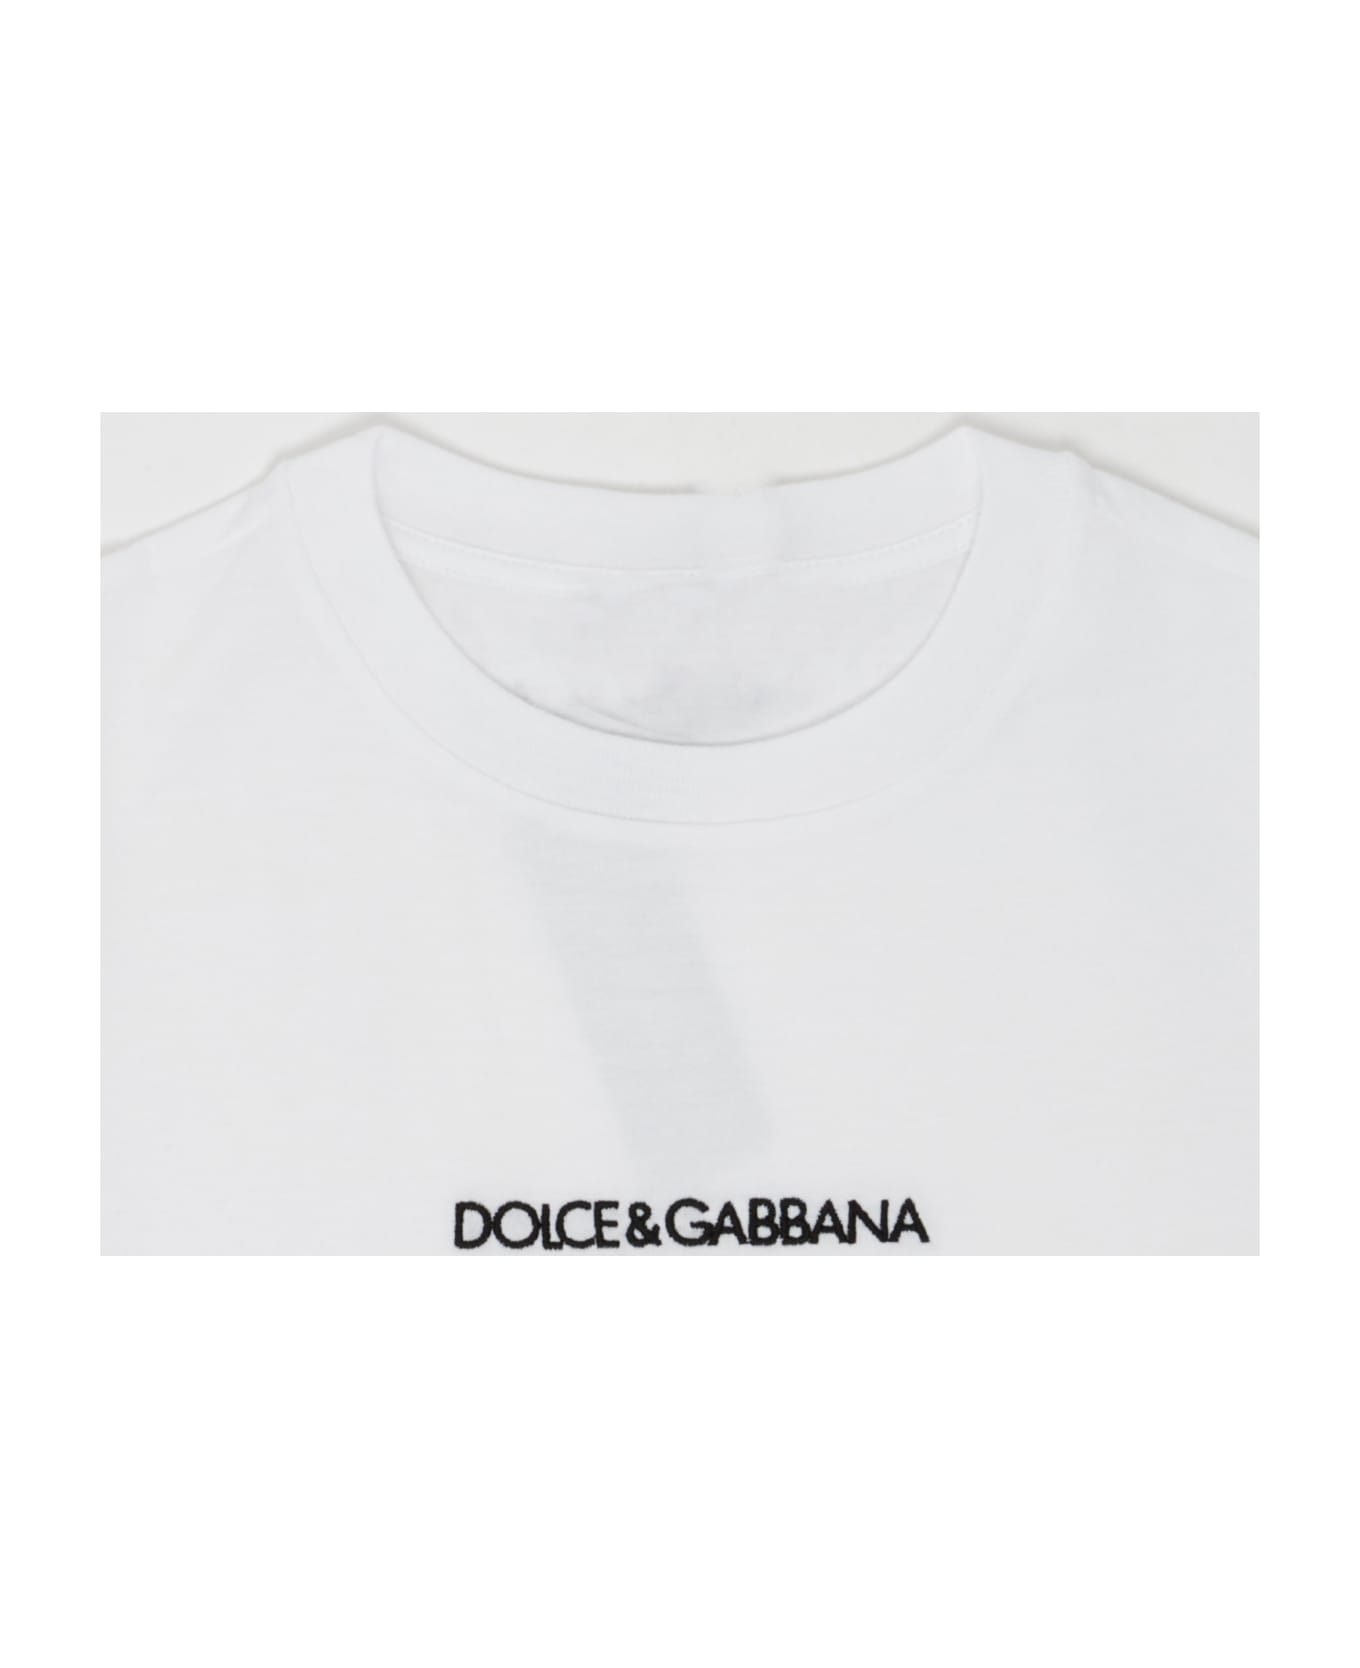 Dolce & Gabbana T-shirt T-shirt - BIANCO OTTICO